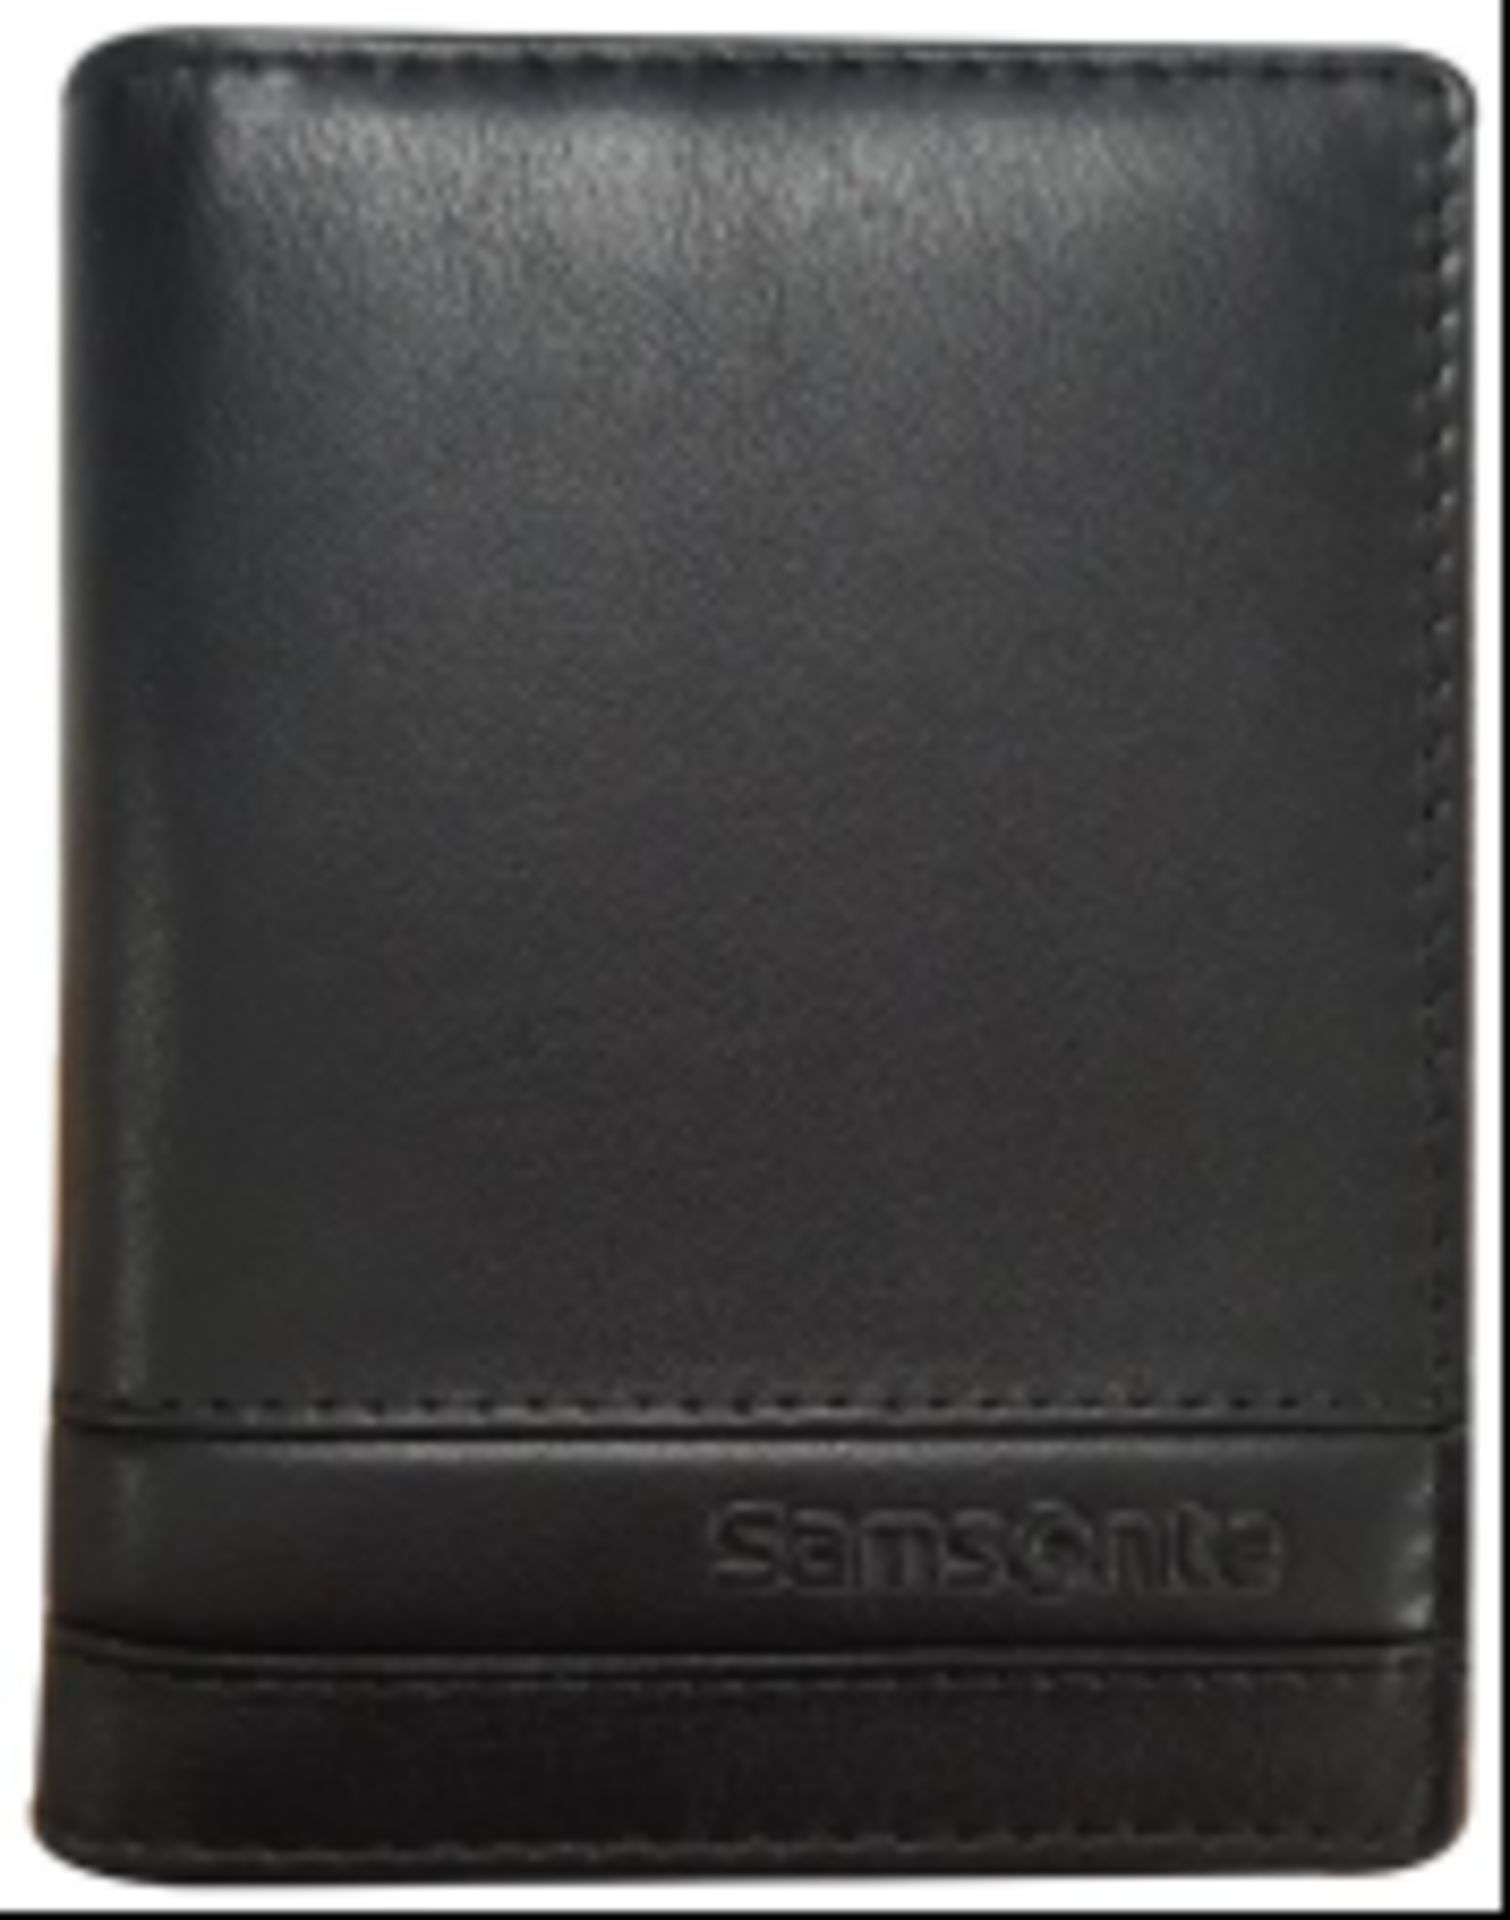 V Brand New Samsonite Gents Black Leather Card Holder - 12 Credit Card Slots - RRP: £35.95 - Image 3 of 3